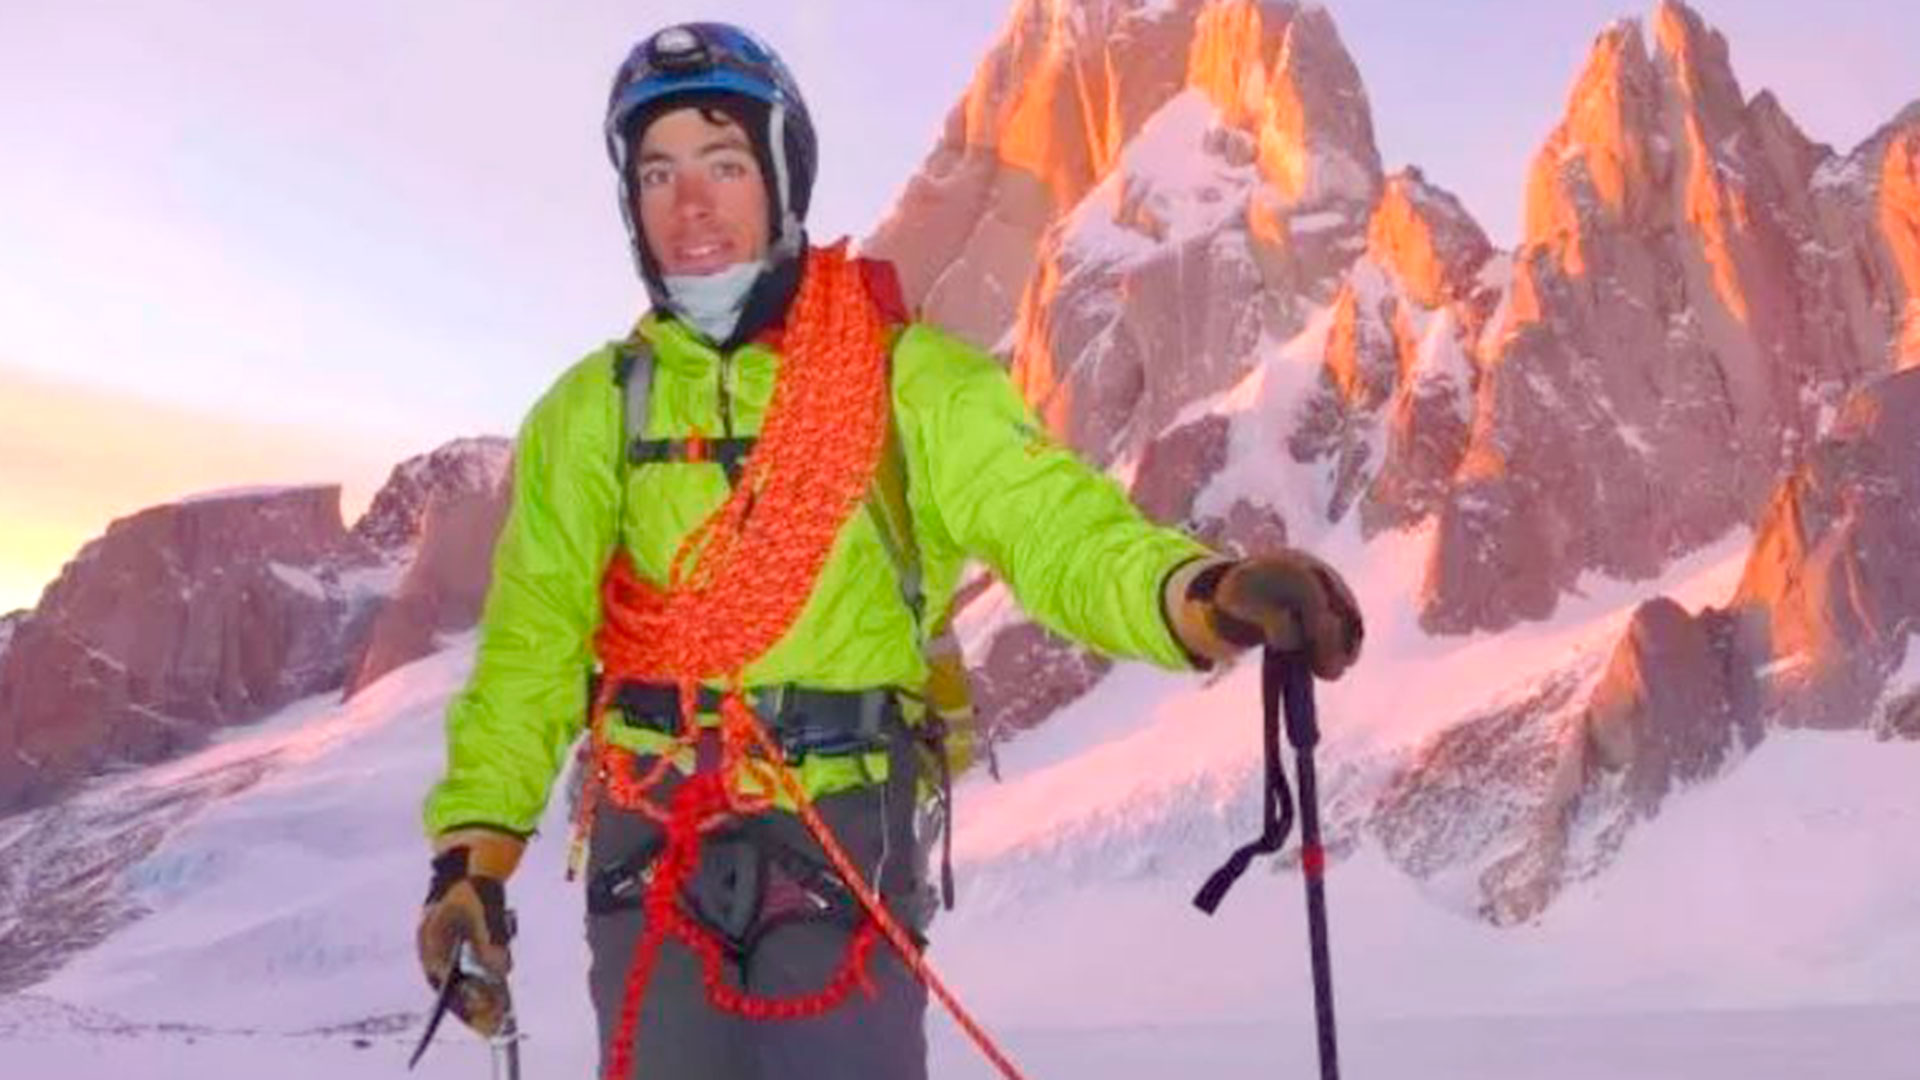 Tomás Aguiló, el andinista argentino rescatado tras sufrir una avalancha mientras descendía el cerro Torre junto a un colega italiano. 